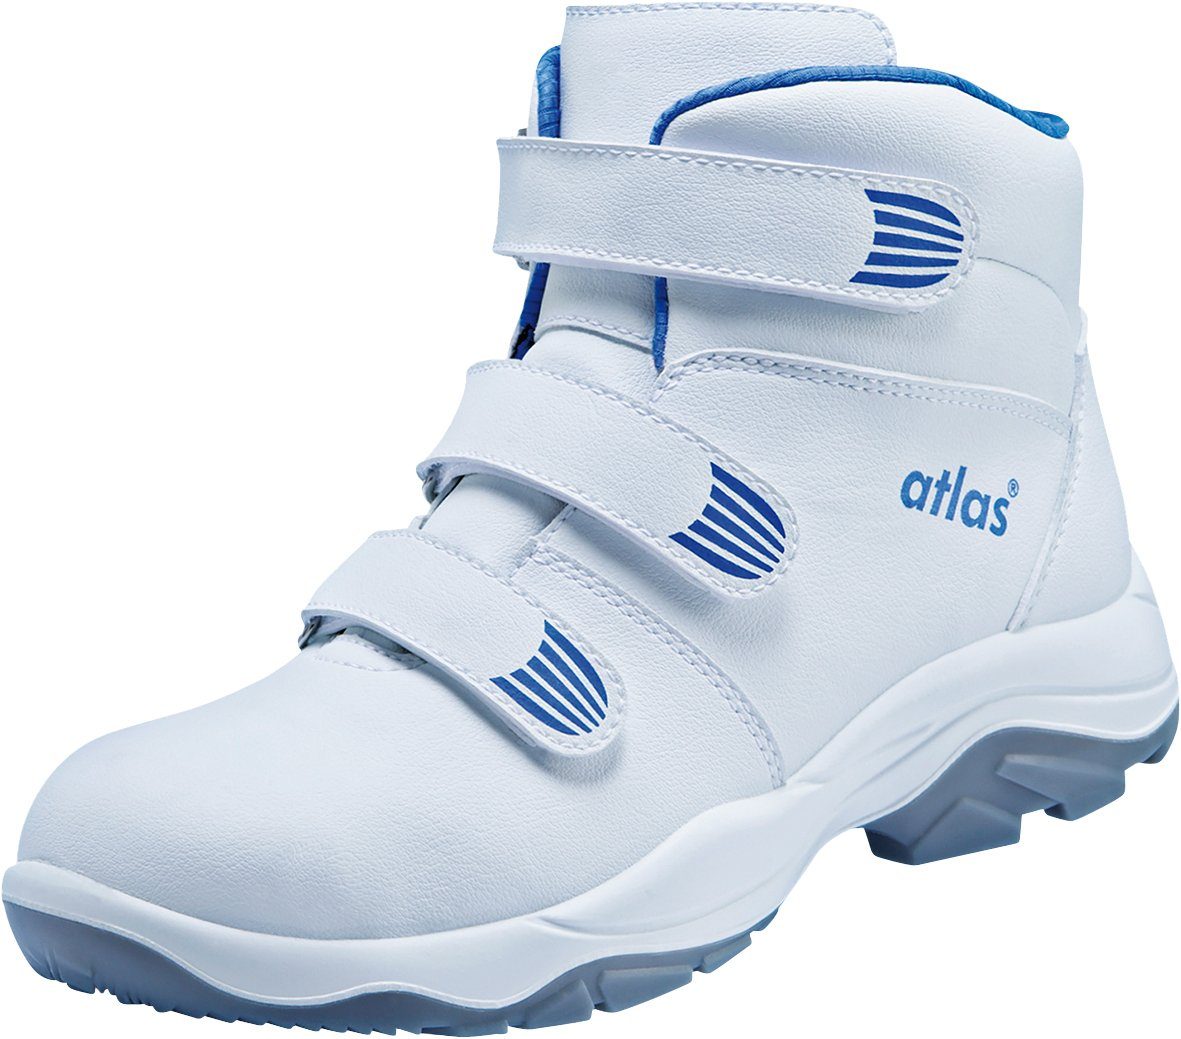 Schuhe Atlas CL Sicherheitsklasse S2 Sicherheitsschuh 573